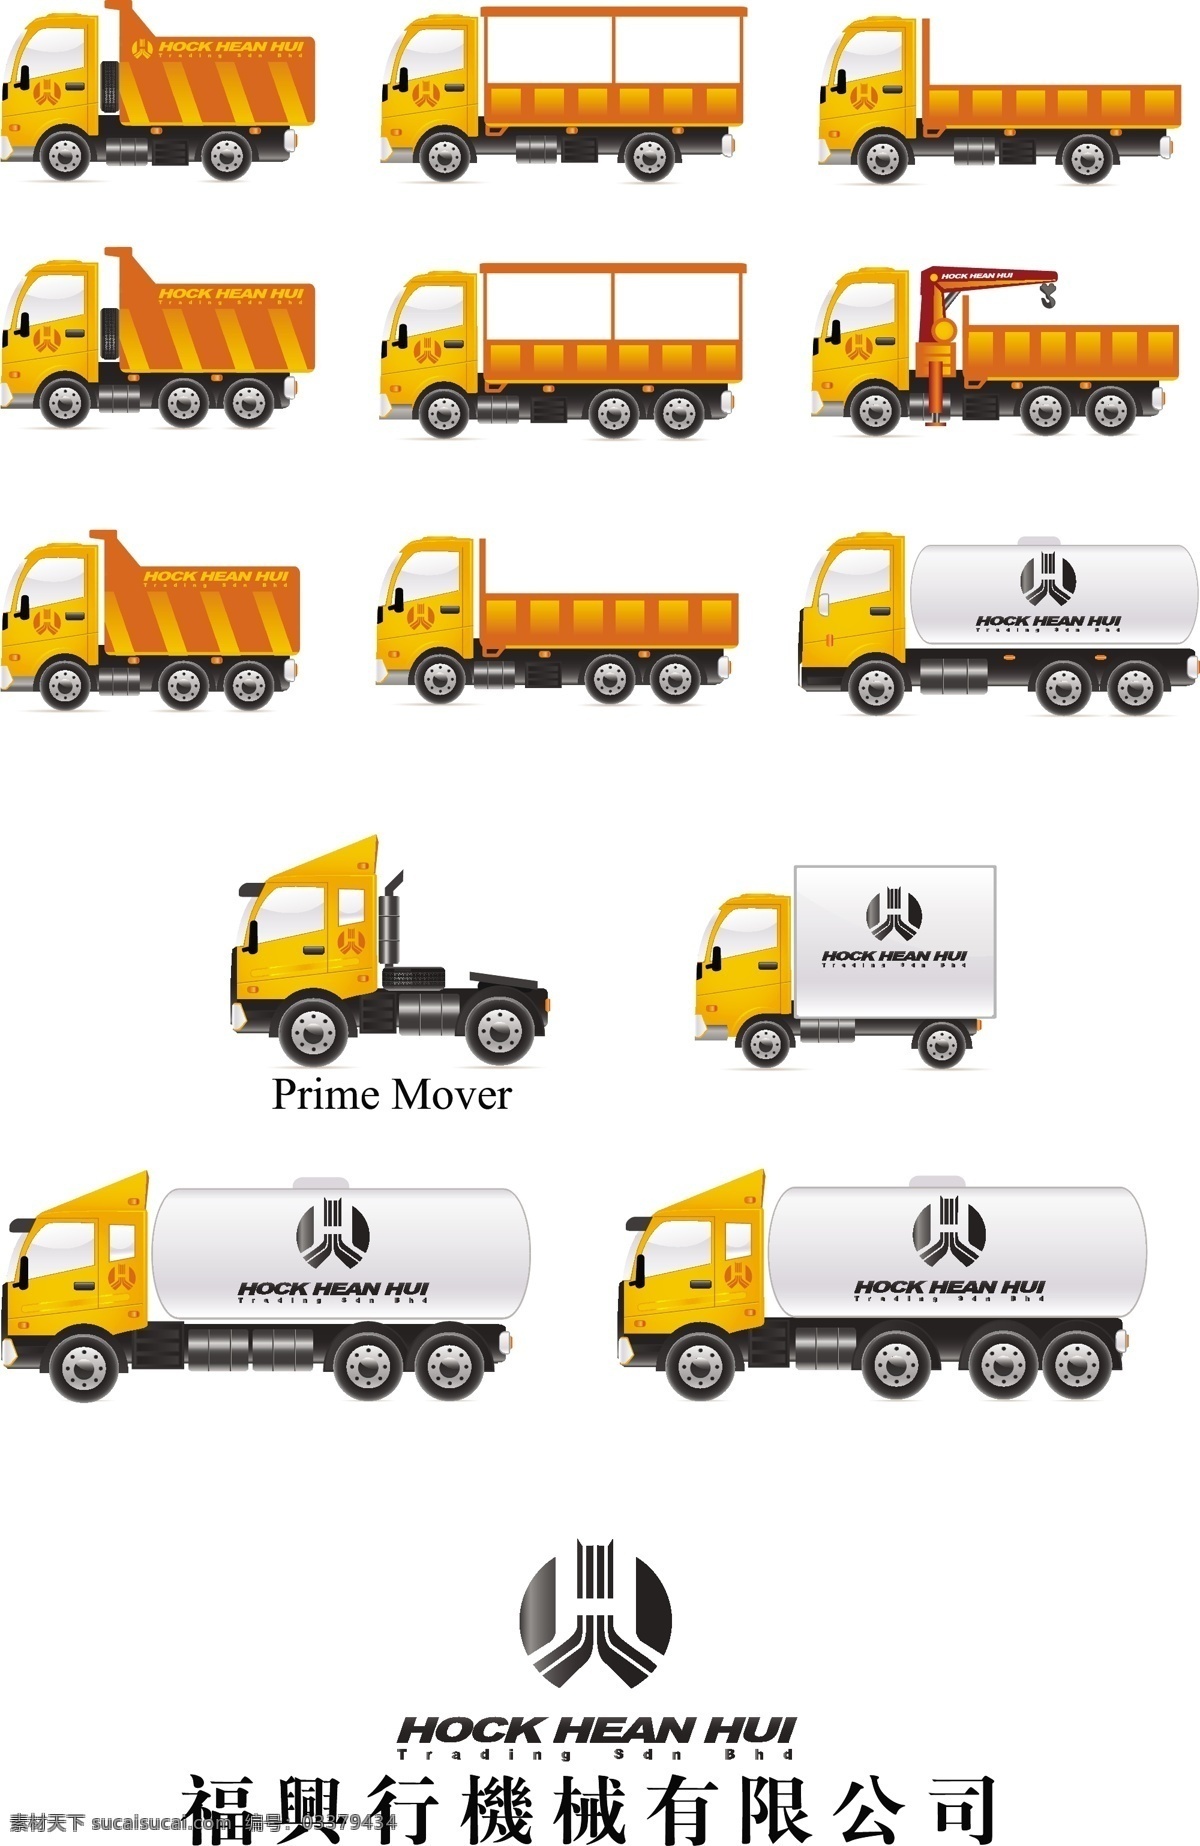 卡车矢量图 卡车 工程车 物流 货运 运输 耐用 交通工具 现代科技 矢量